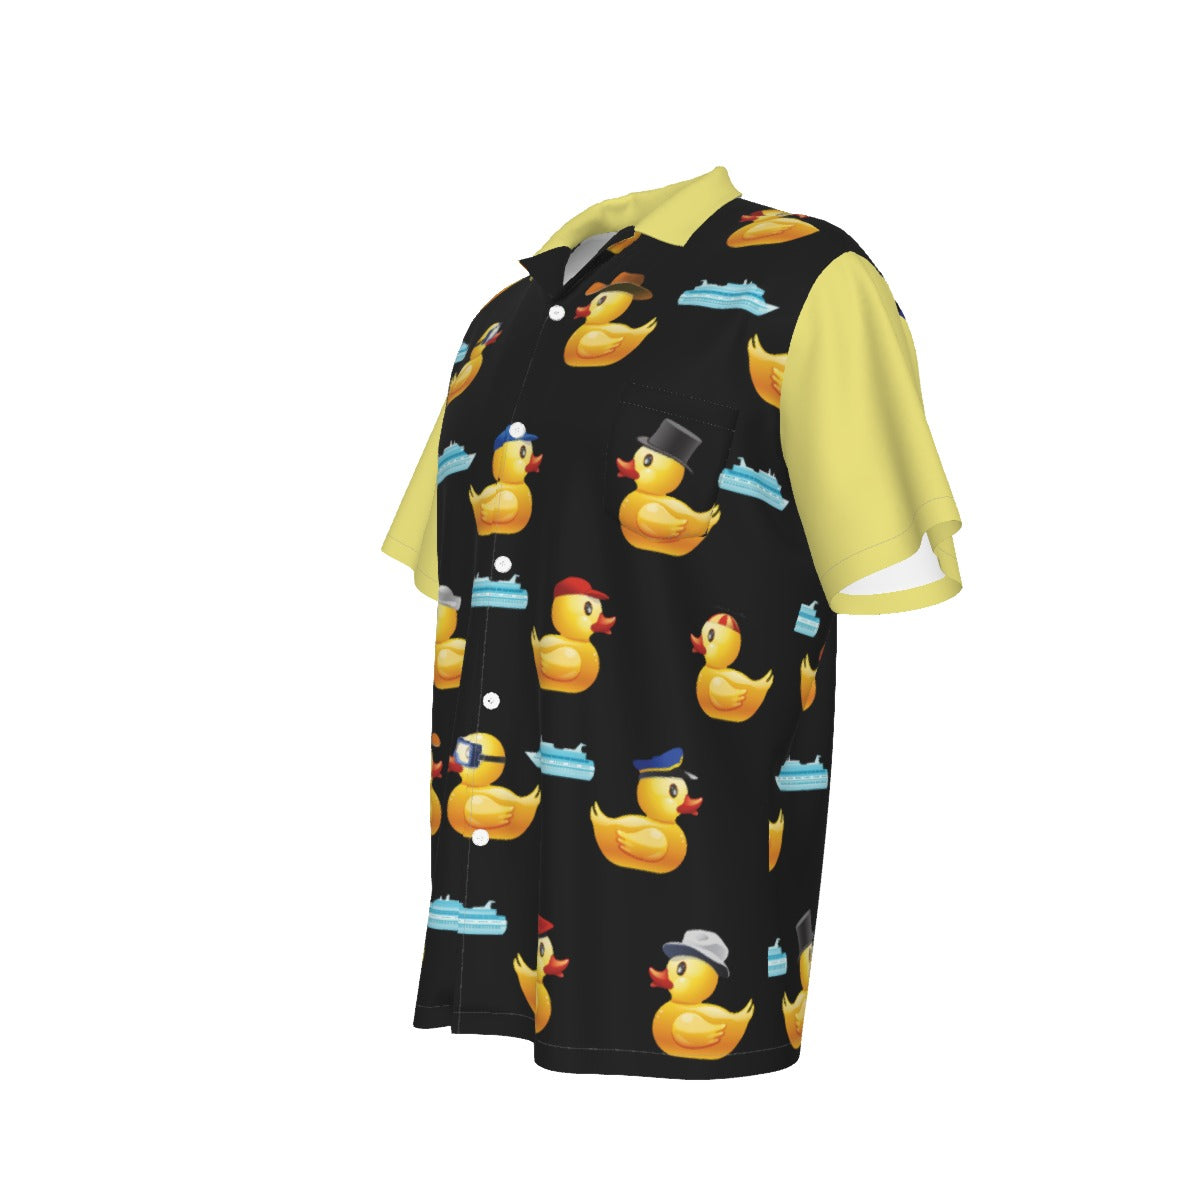 Ducky Black and Yellow Men's Hawaiian Shirt With Pocket